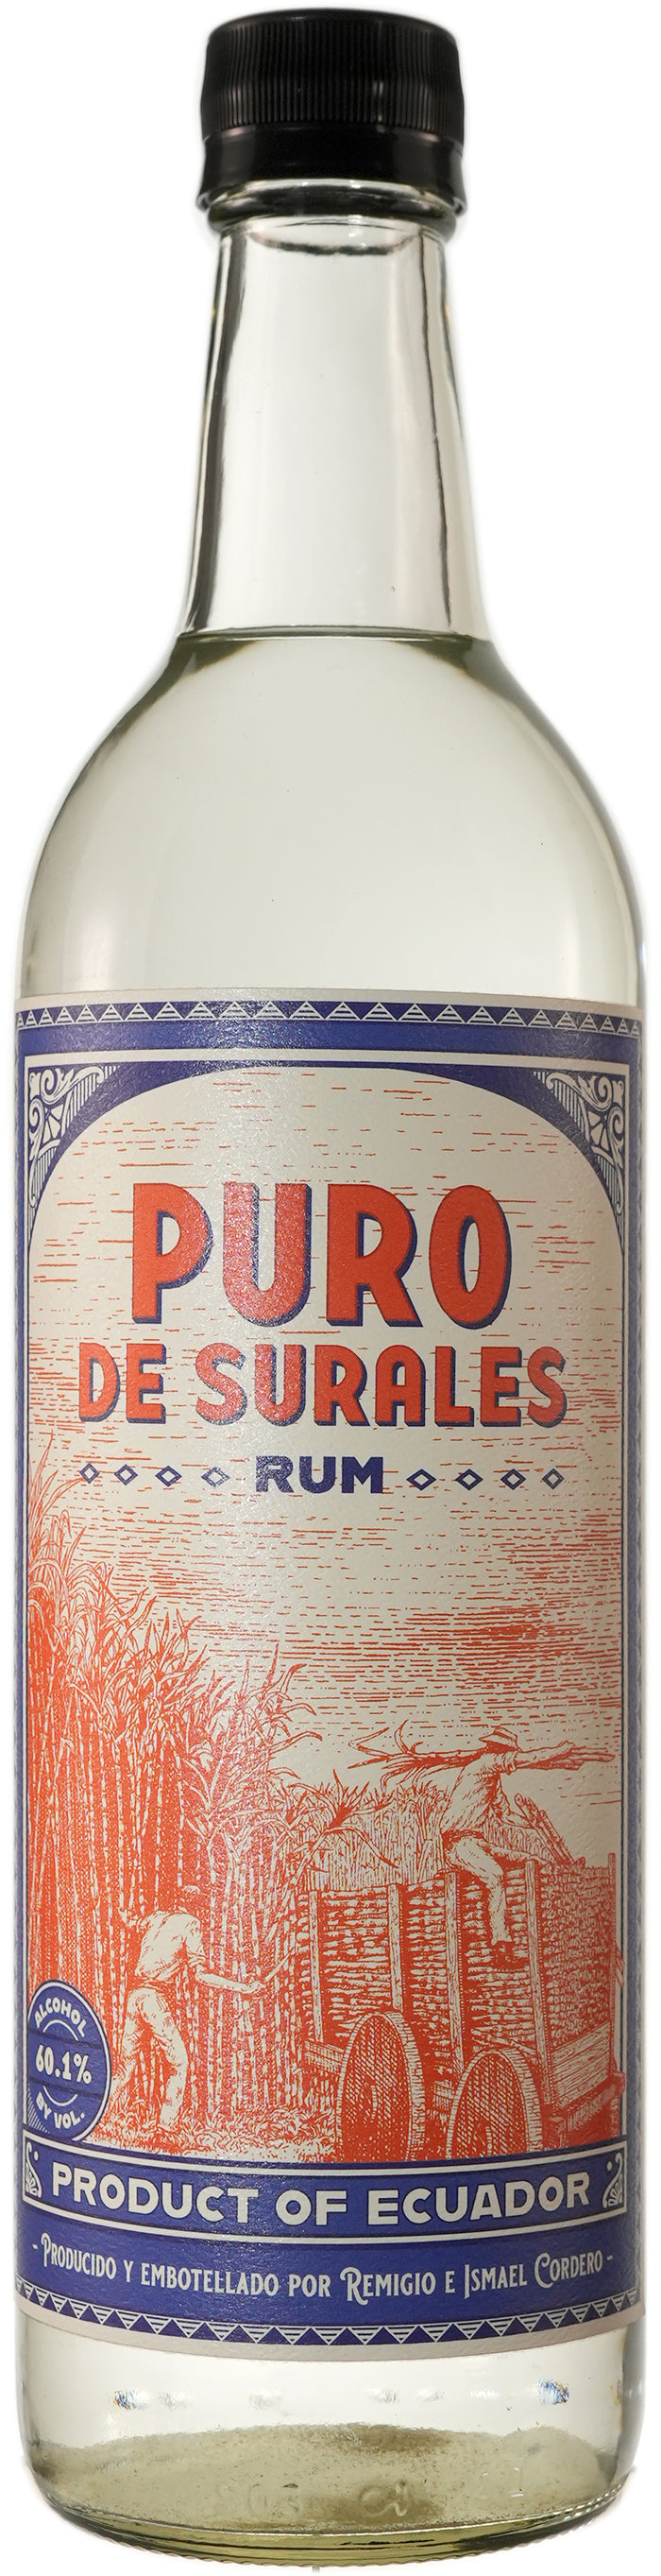 Puro de Surales Rum